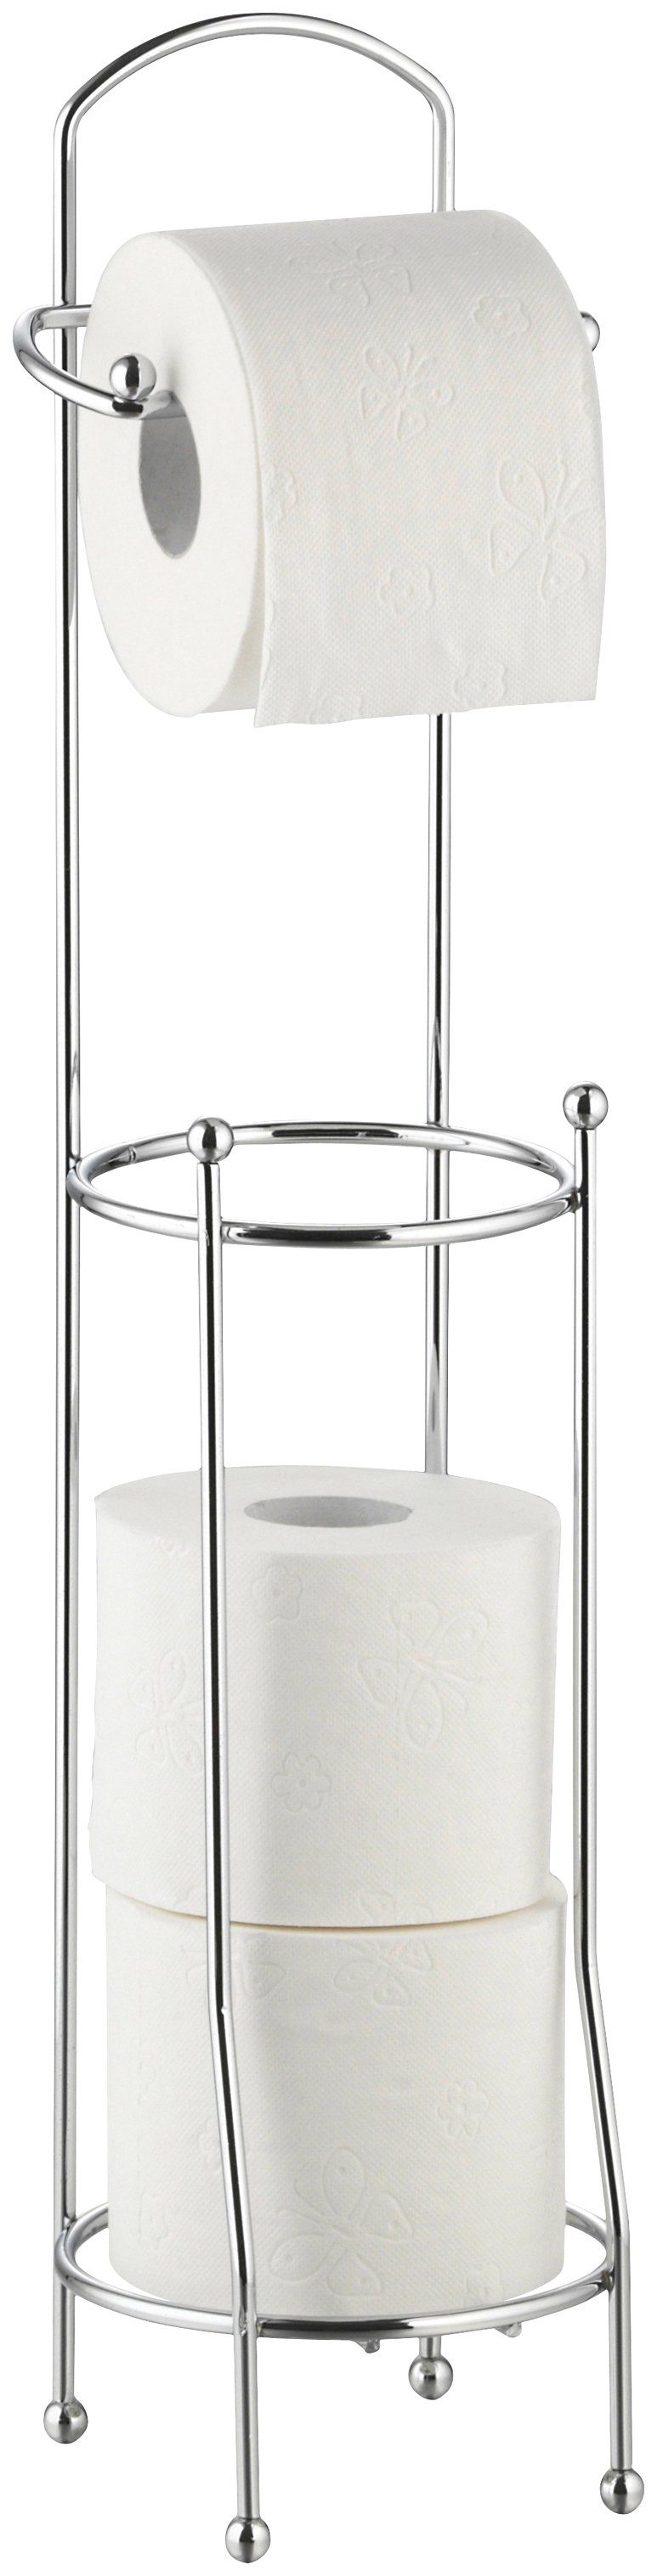 axentia Toilettenpapierhalter Udana, für ca. 4 Rollen, Länge: 15,5 cm | Toilettenpapierhalter